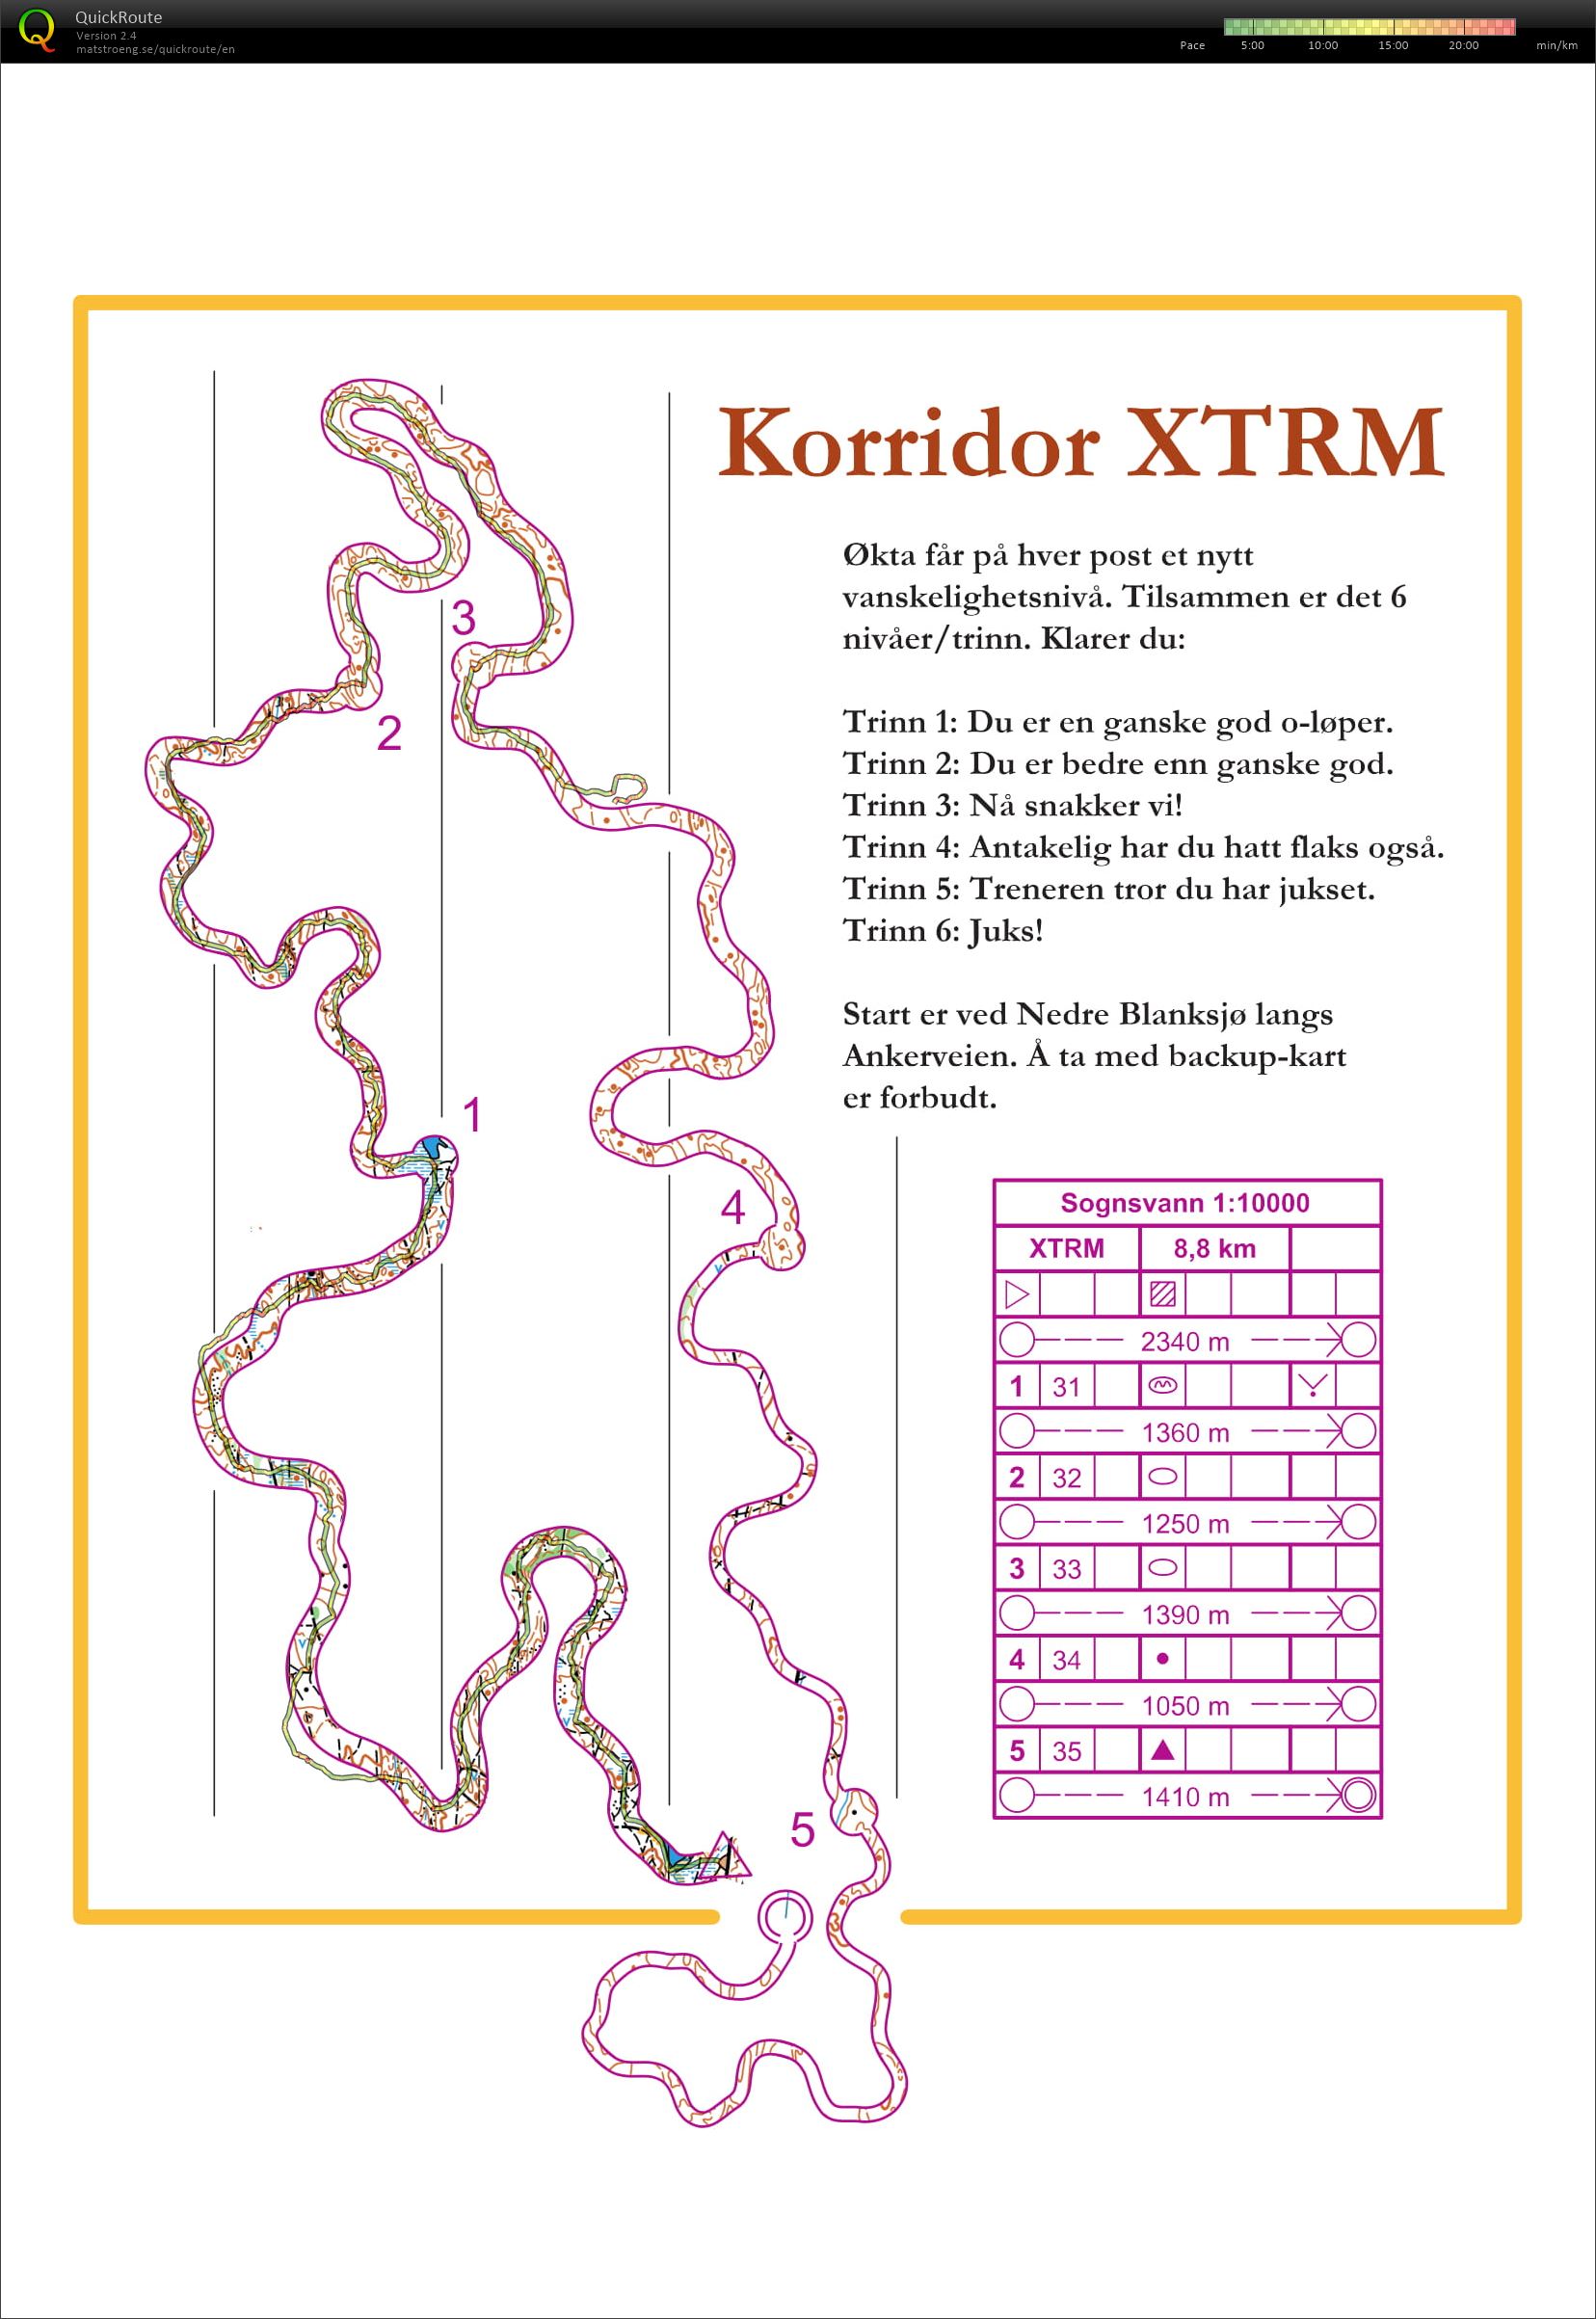 XTRM coridor (07.06.2018)